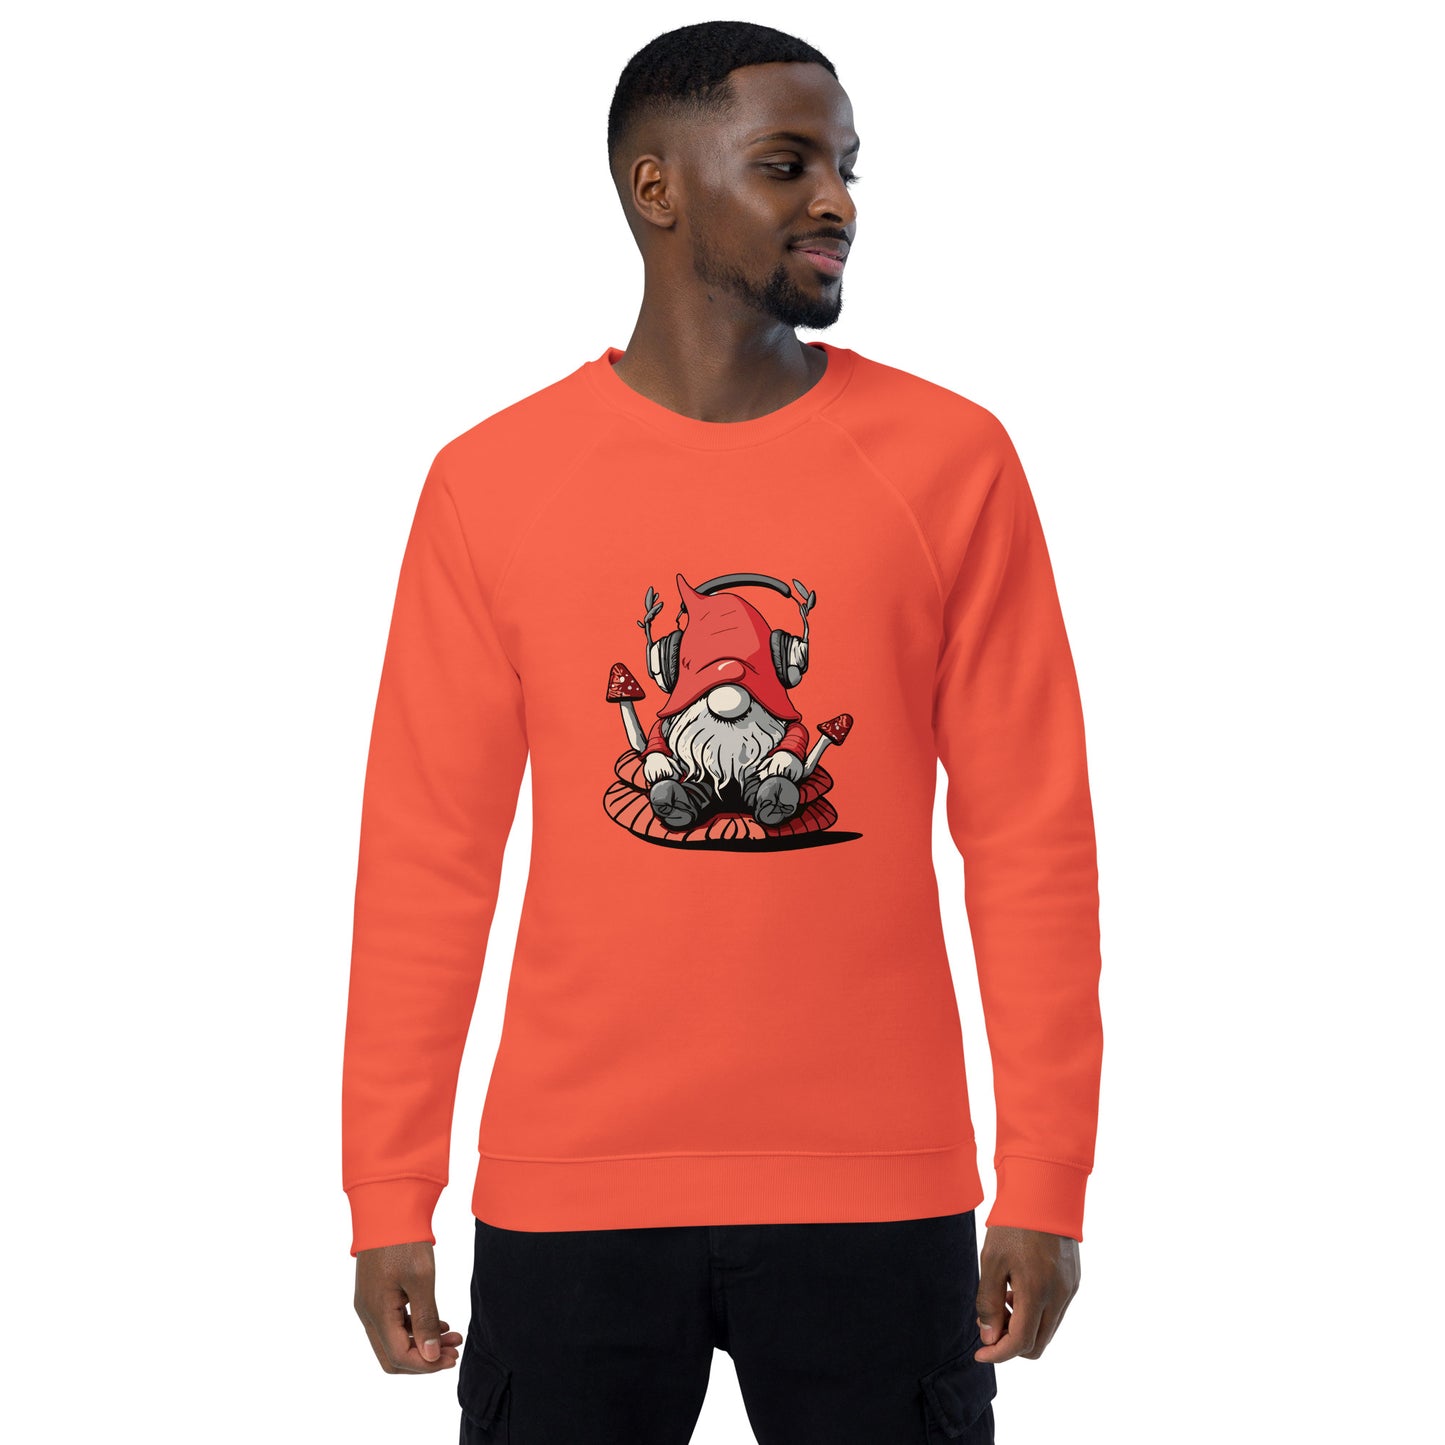 SGK Unisex organic raglan sweatshirt Mushroom logo